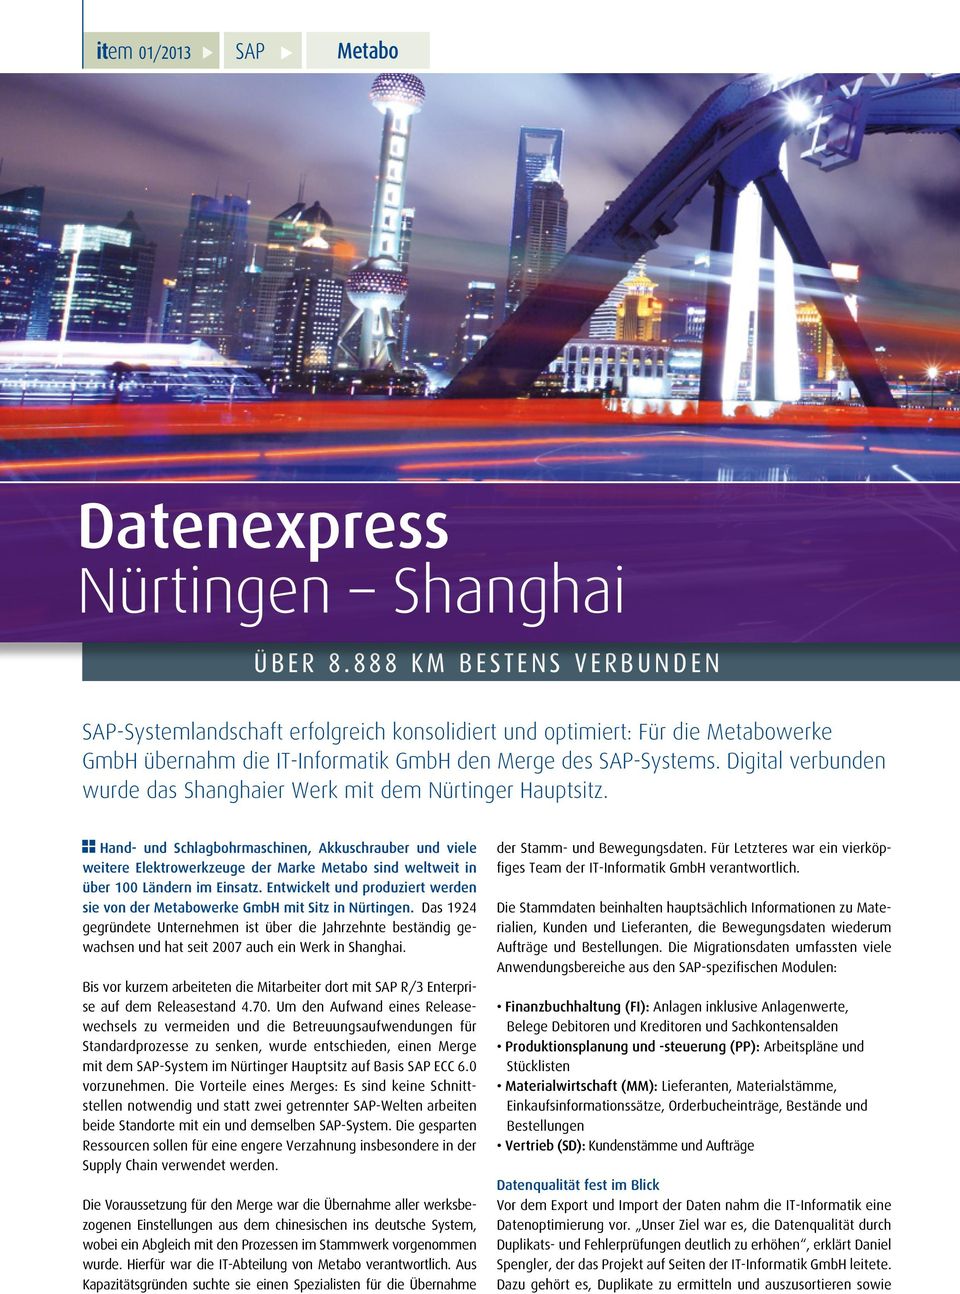 Digital verbunden wurde das Shanghaier Werk mit dem Nürtinger Hauptsitz.